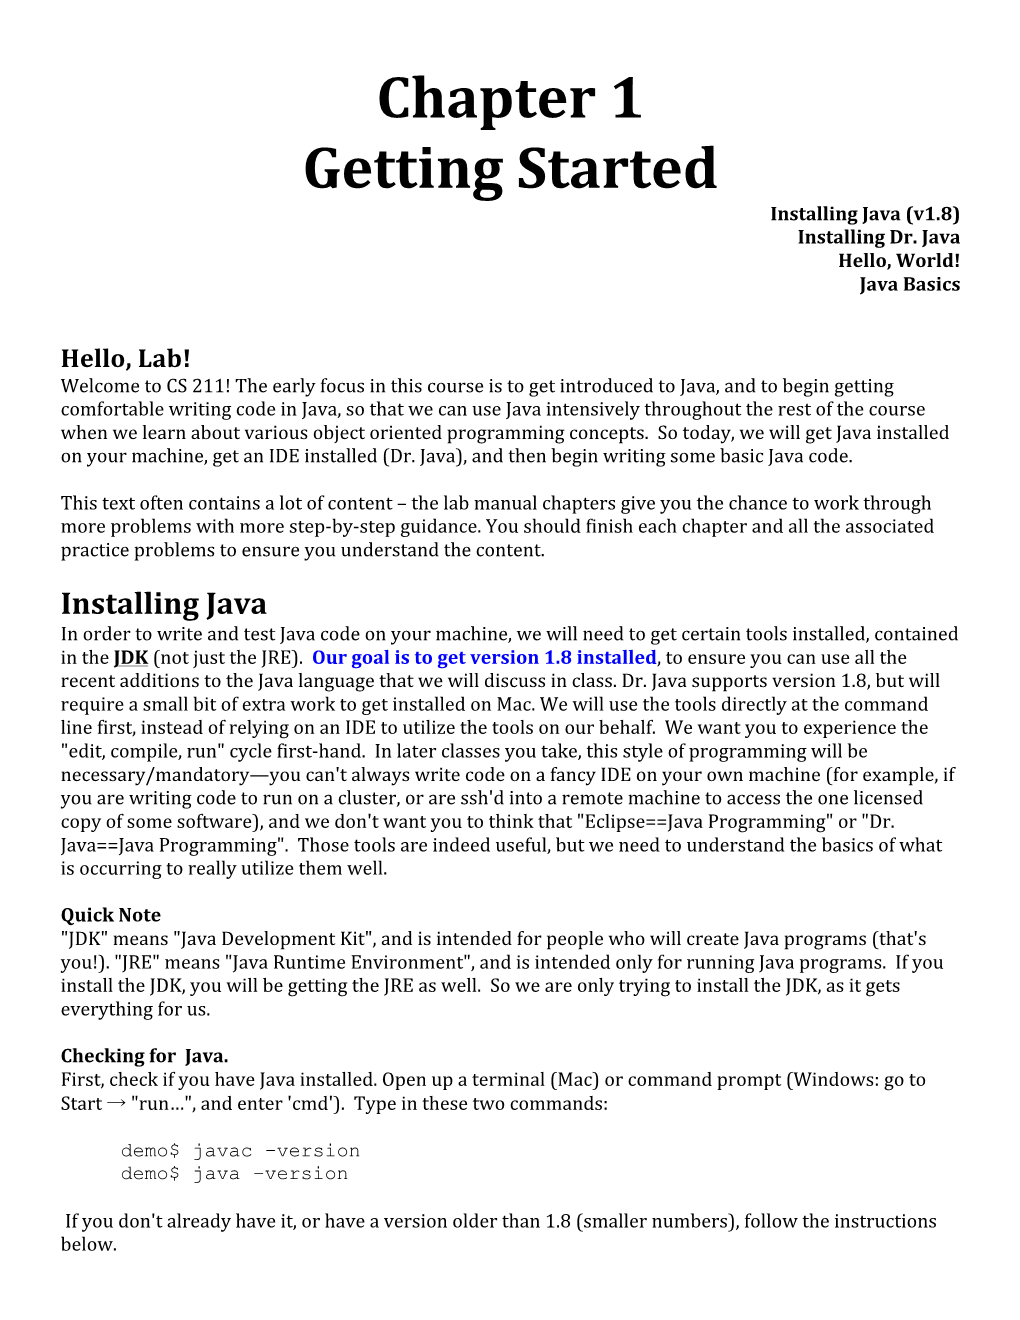 Chapter 1 Getting Started Installing Java (V1.8) Installing Dr